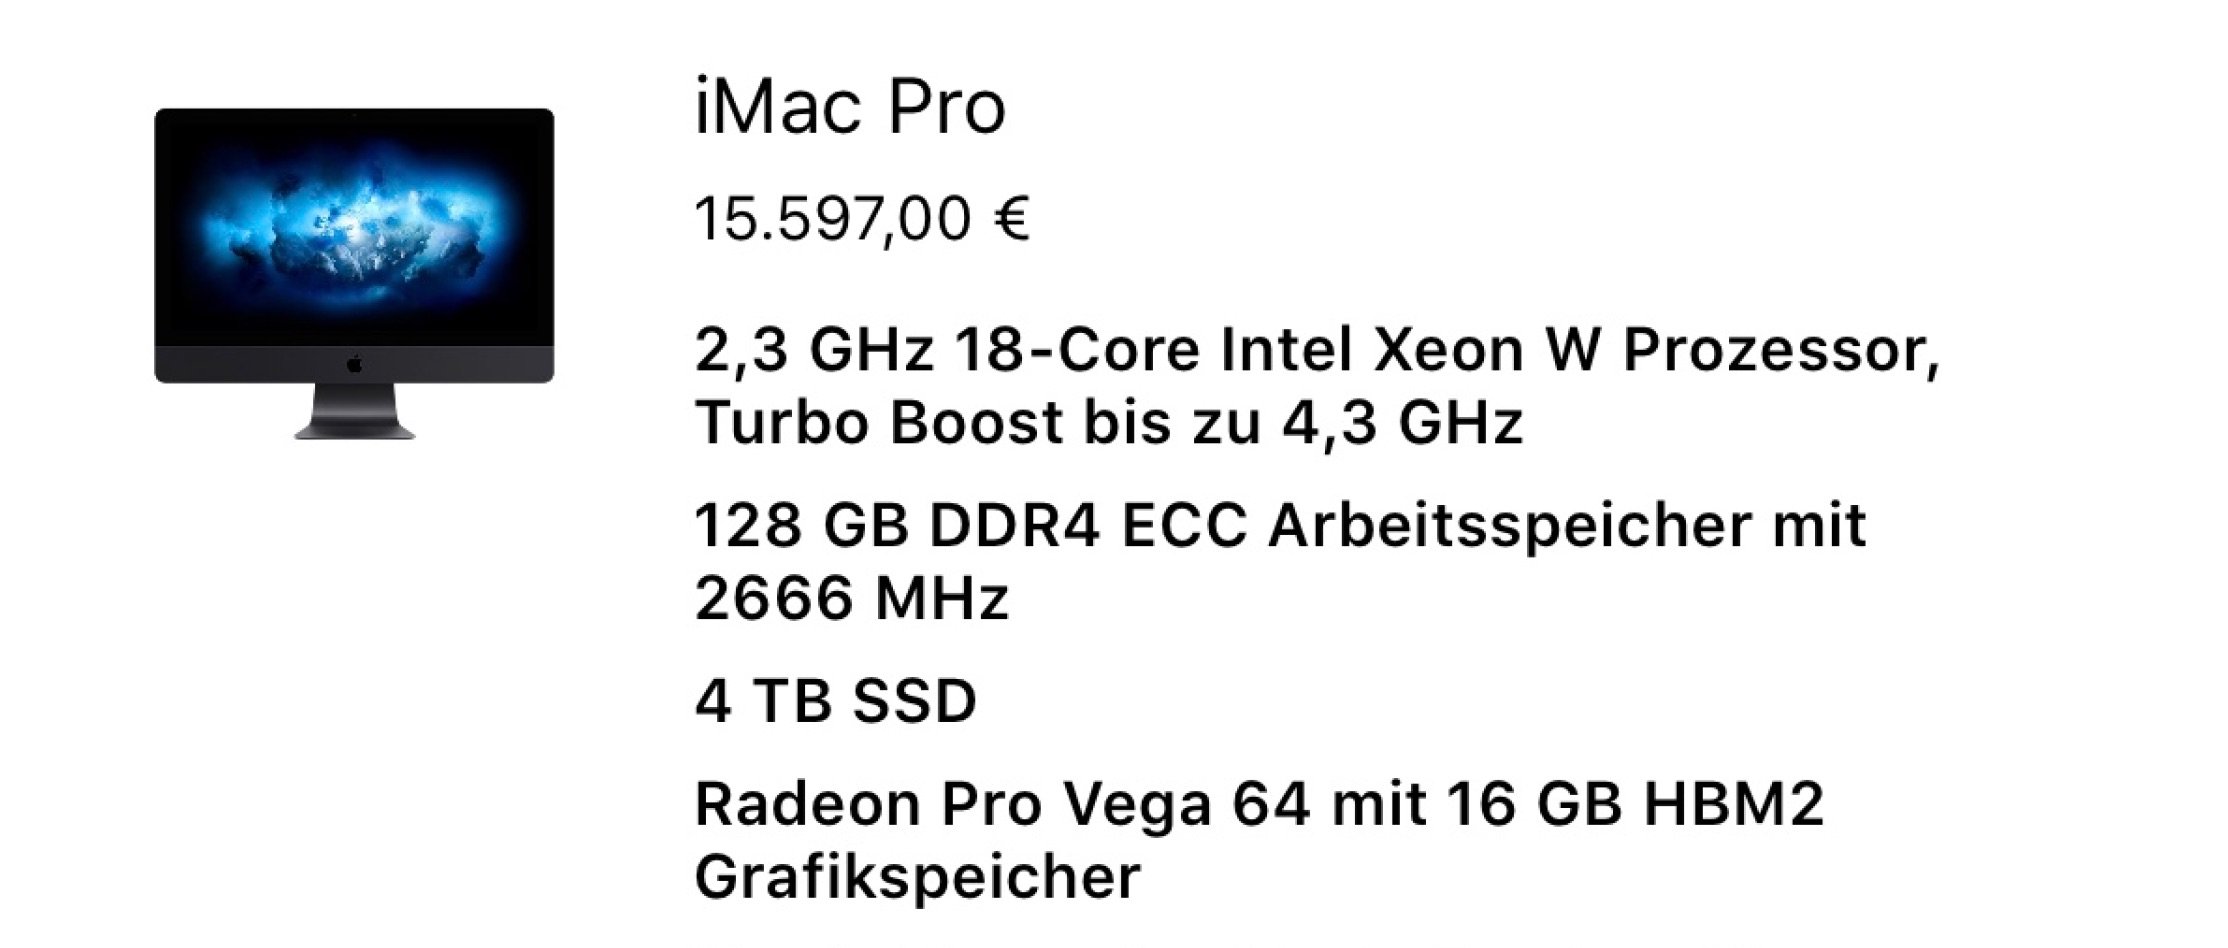 Schnäppchen: iMac Pro Preise von 5499 bis 16000 Euro! 2